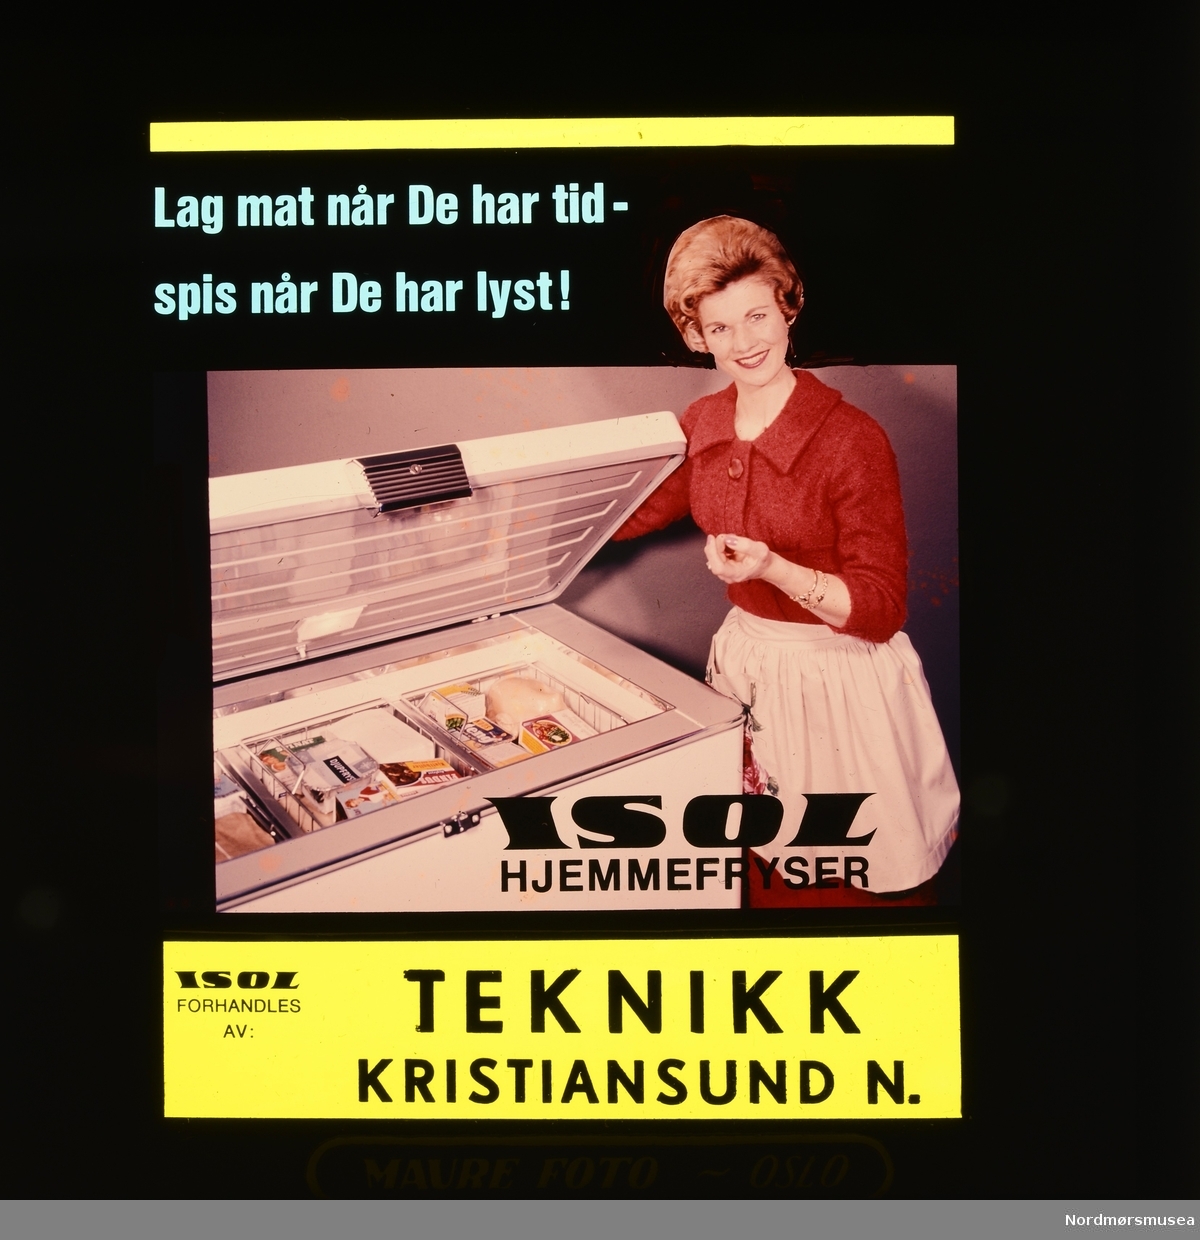 "Lag mat når De har tid - spis når De har lyst! ISOL hjemmefryser" Reklame for frysere fra firmaet Teknikk i Kristiansund. Fra en samling med kinoreklame i Kristiansund. Giver er Erling Sæther. Fra Nordmøre museums fotosamlinger.